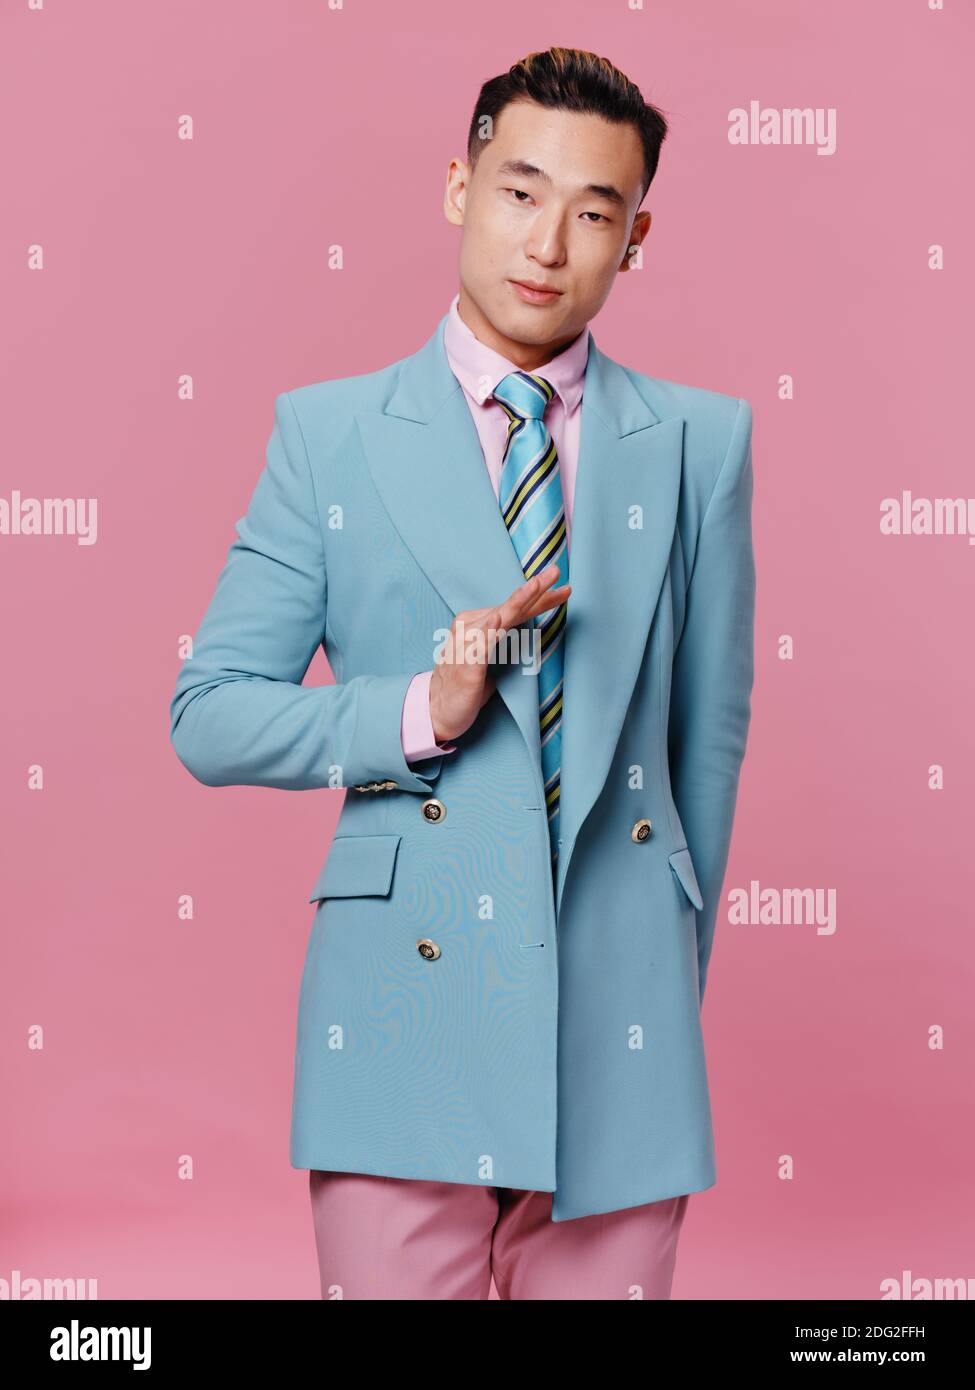 élégant homme en costume bleu blazer style de vie fond rose Photo Stock -  Alamy